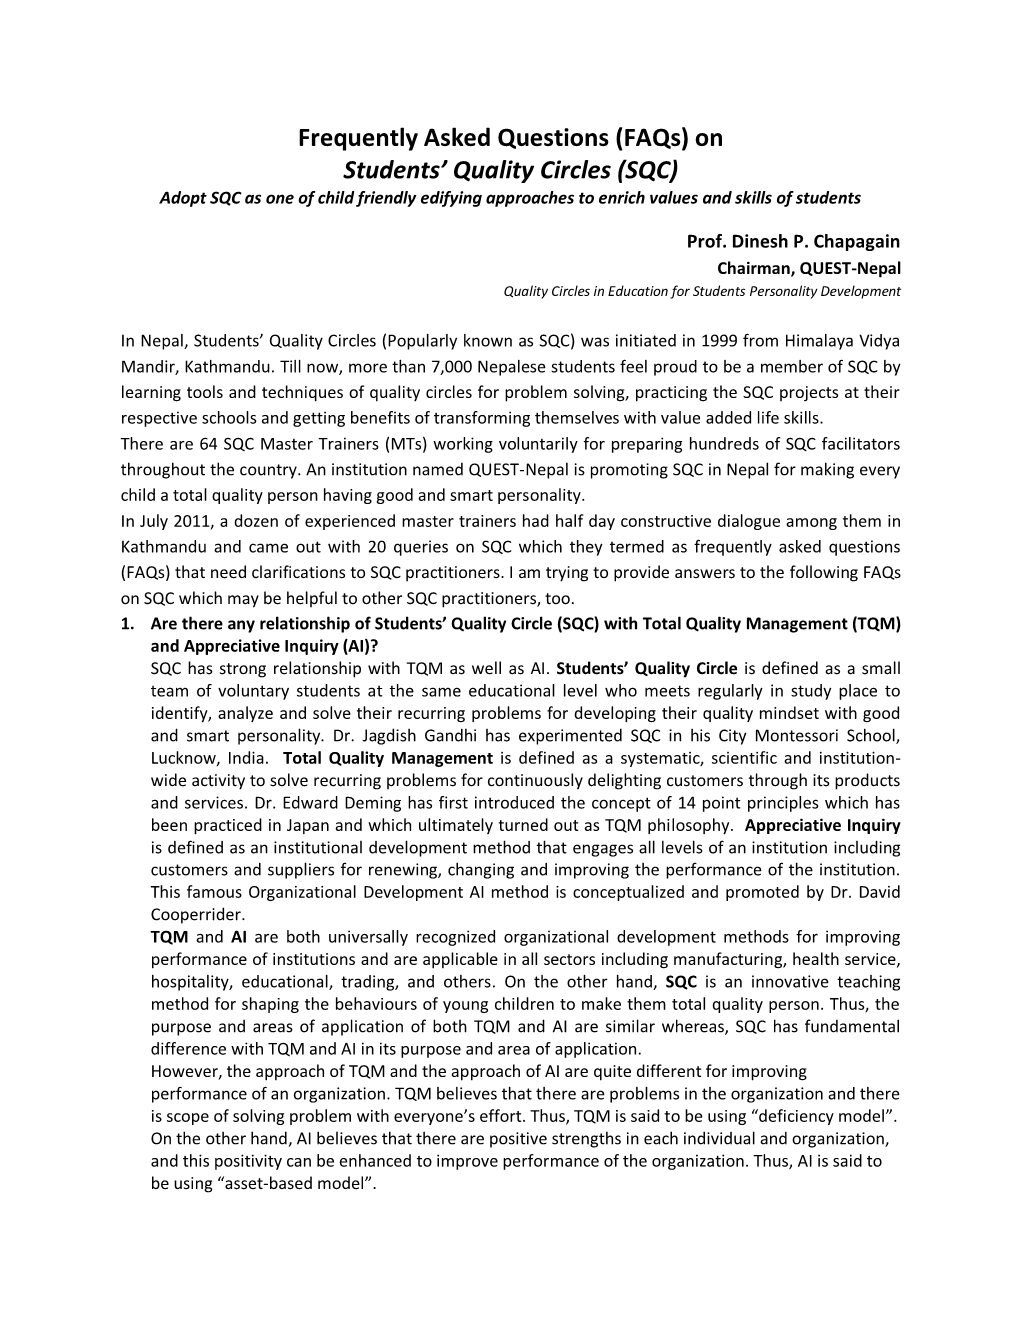 On Students' Quality Circles (SQC)